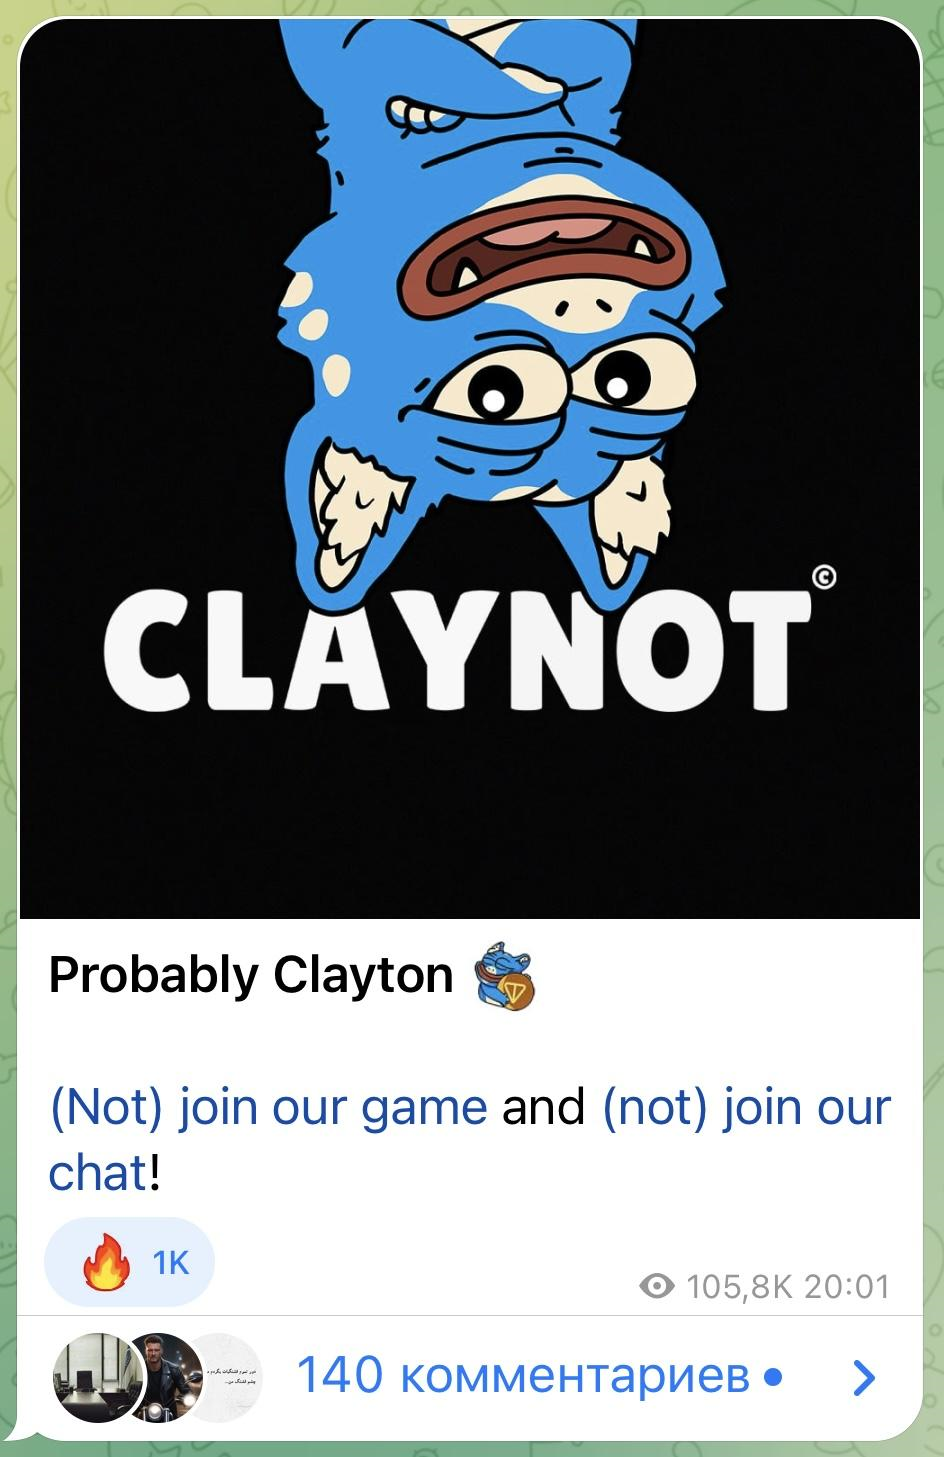 ТГ-пост от Clayton о партнерстве с Notcoin 